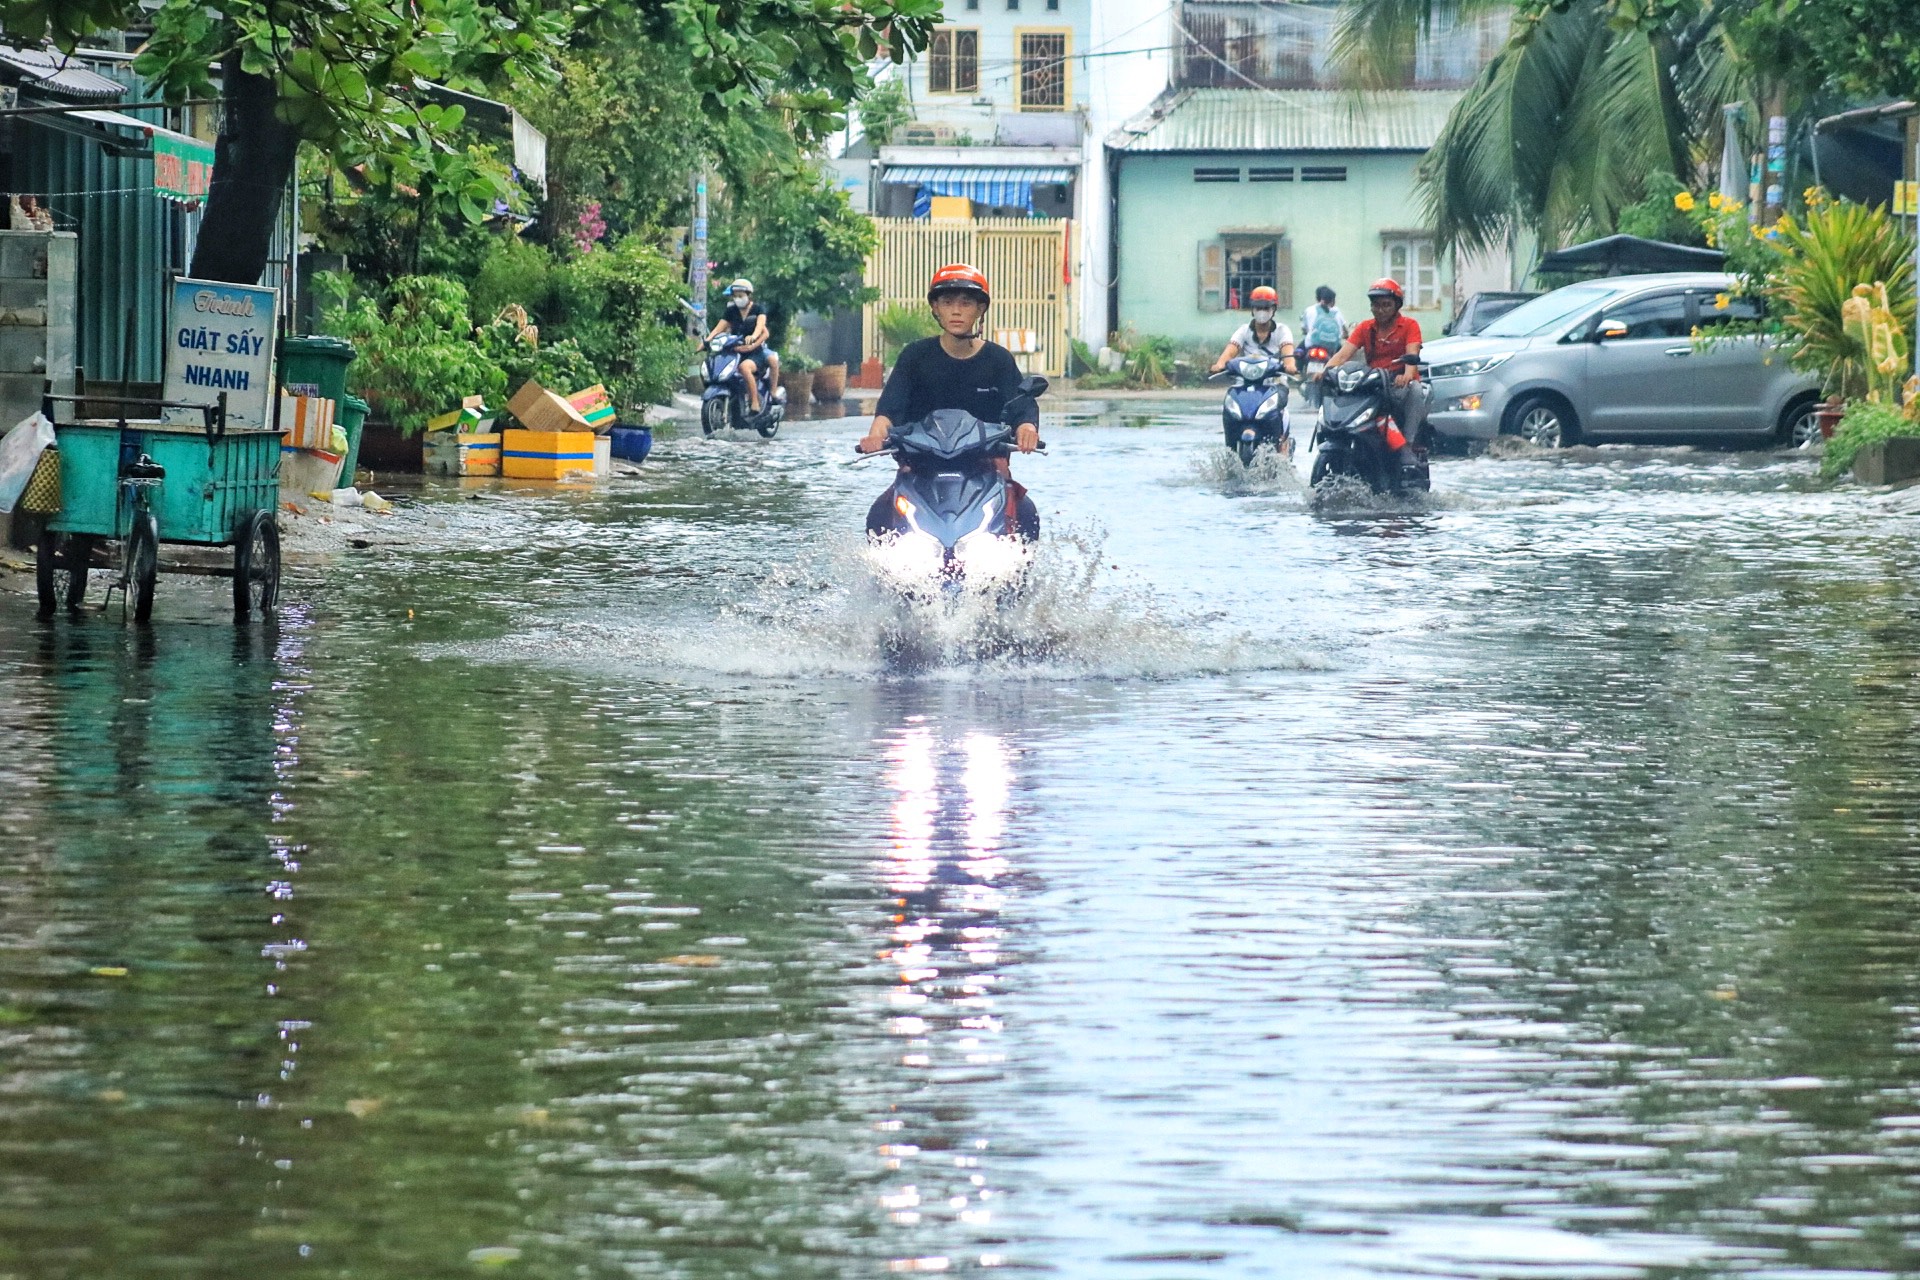 Cuối giờ chiều, mưa lớn làm đường số 1 thuộc khu dân cư Bình Hưng (H.Bình Chánh) mênh mông trong nước